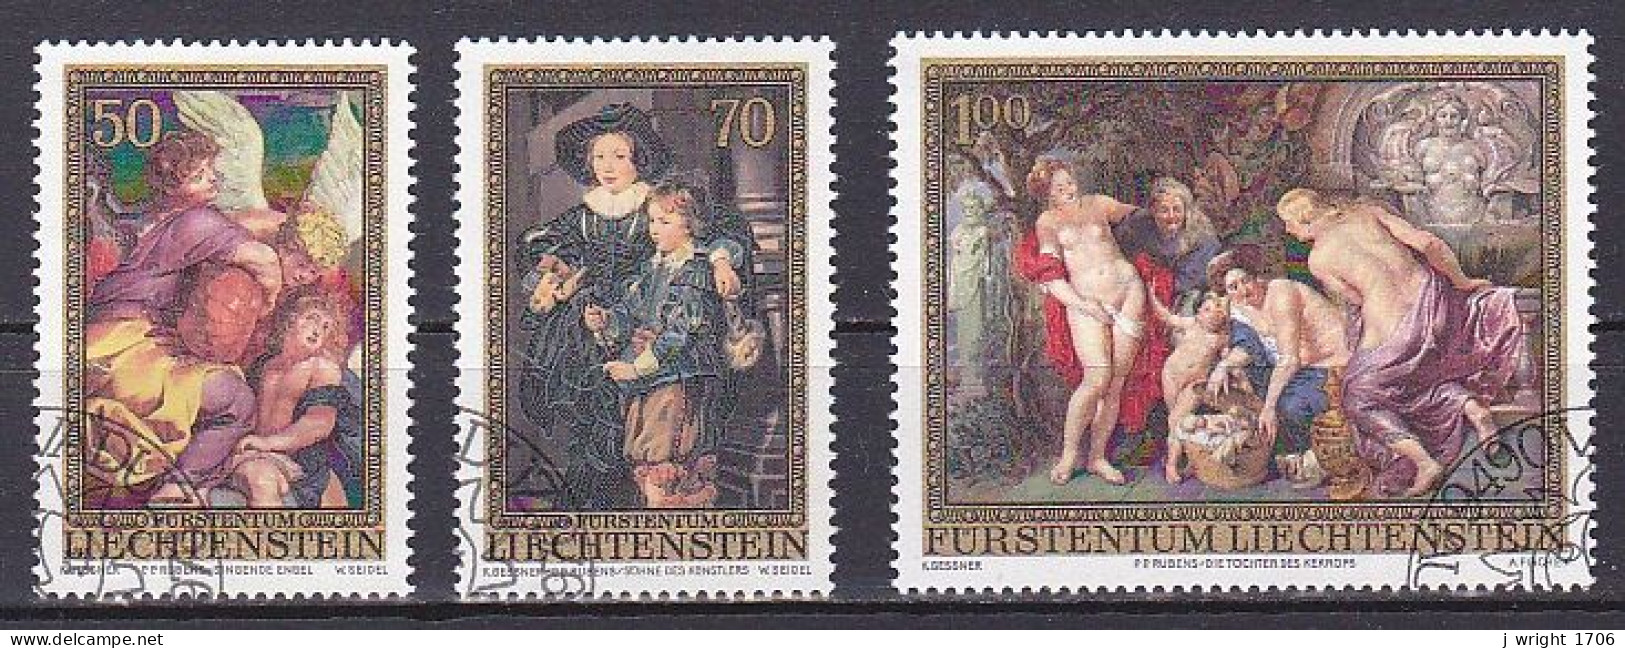 Liechtenstein, 1976, Peter Paul Rubens, Set, CTO - Usati